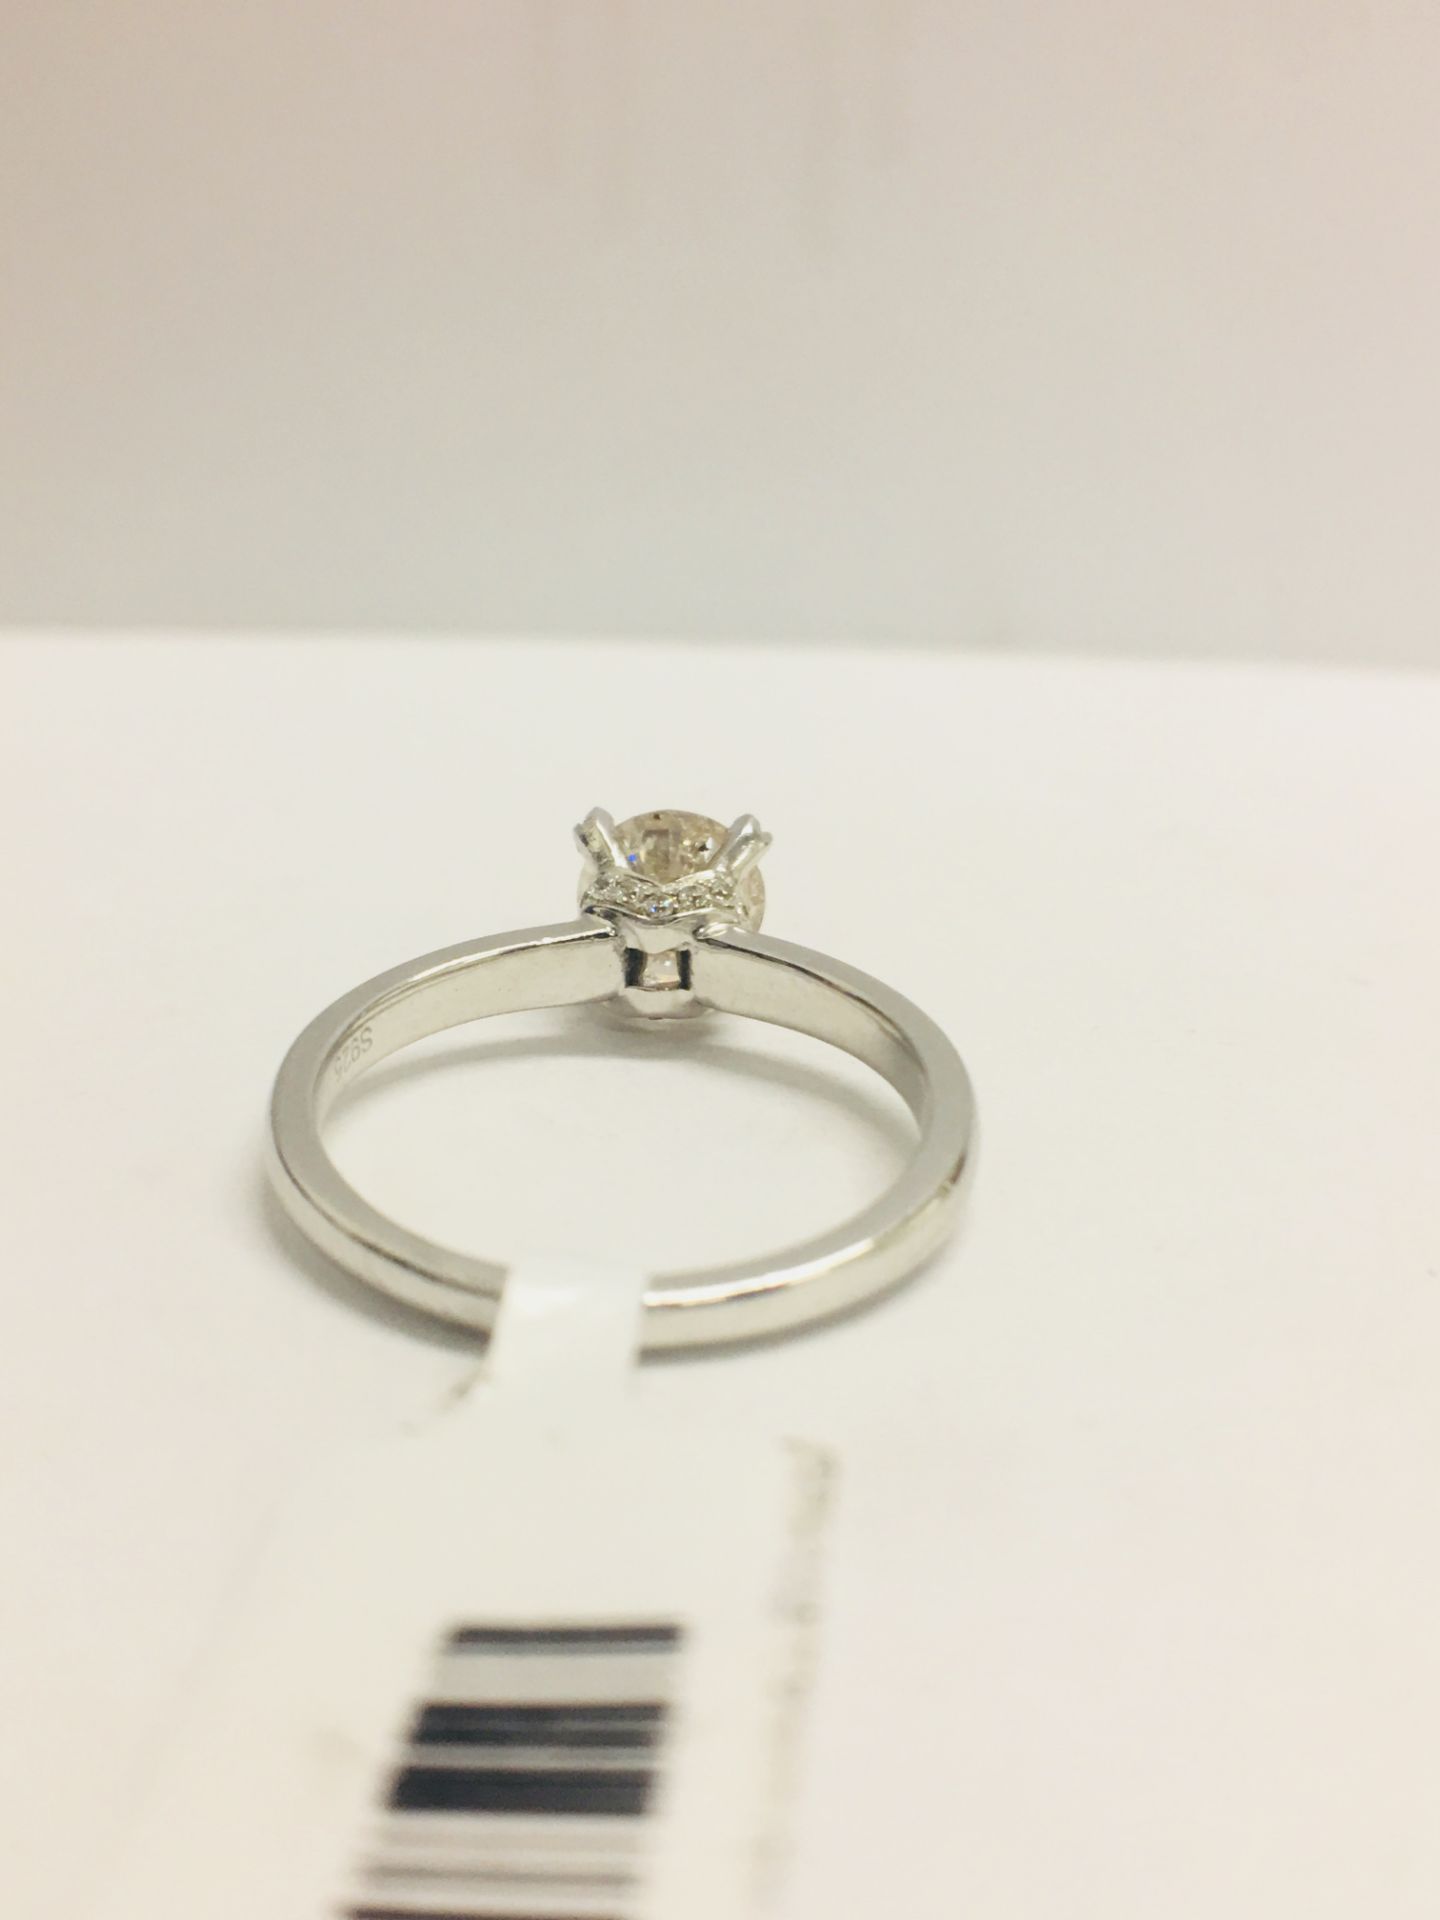 1ct Diamond Solitaire ring set in Platinum diamnd setting - Image 7 of 13